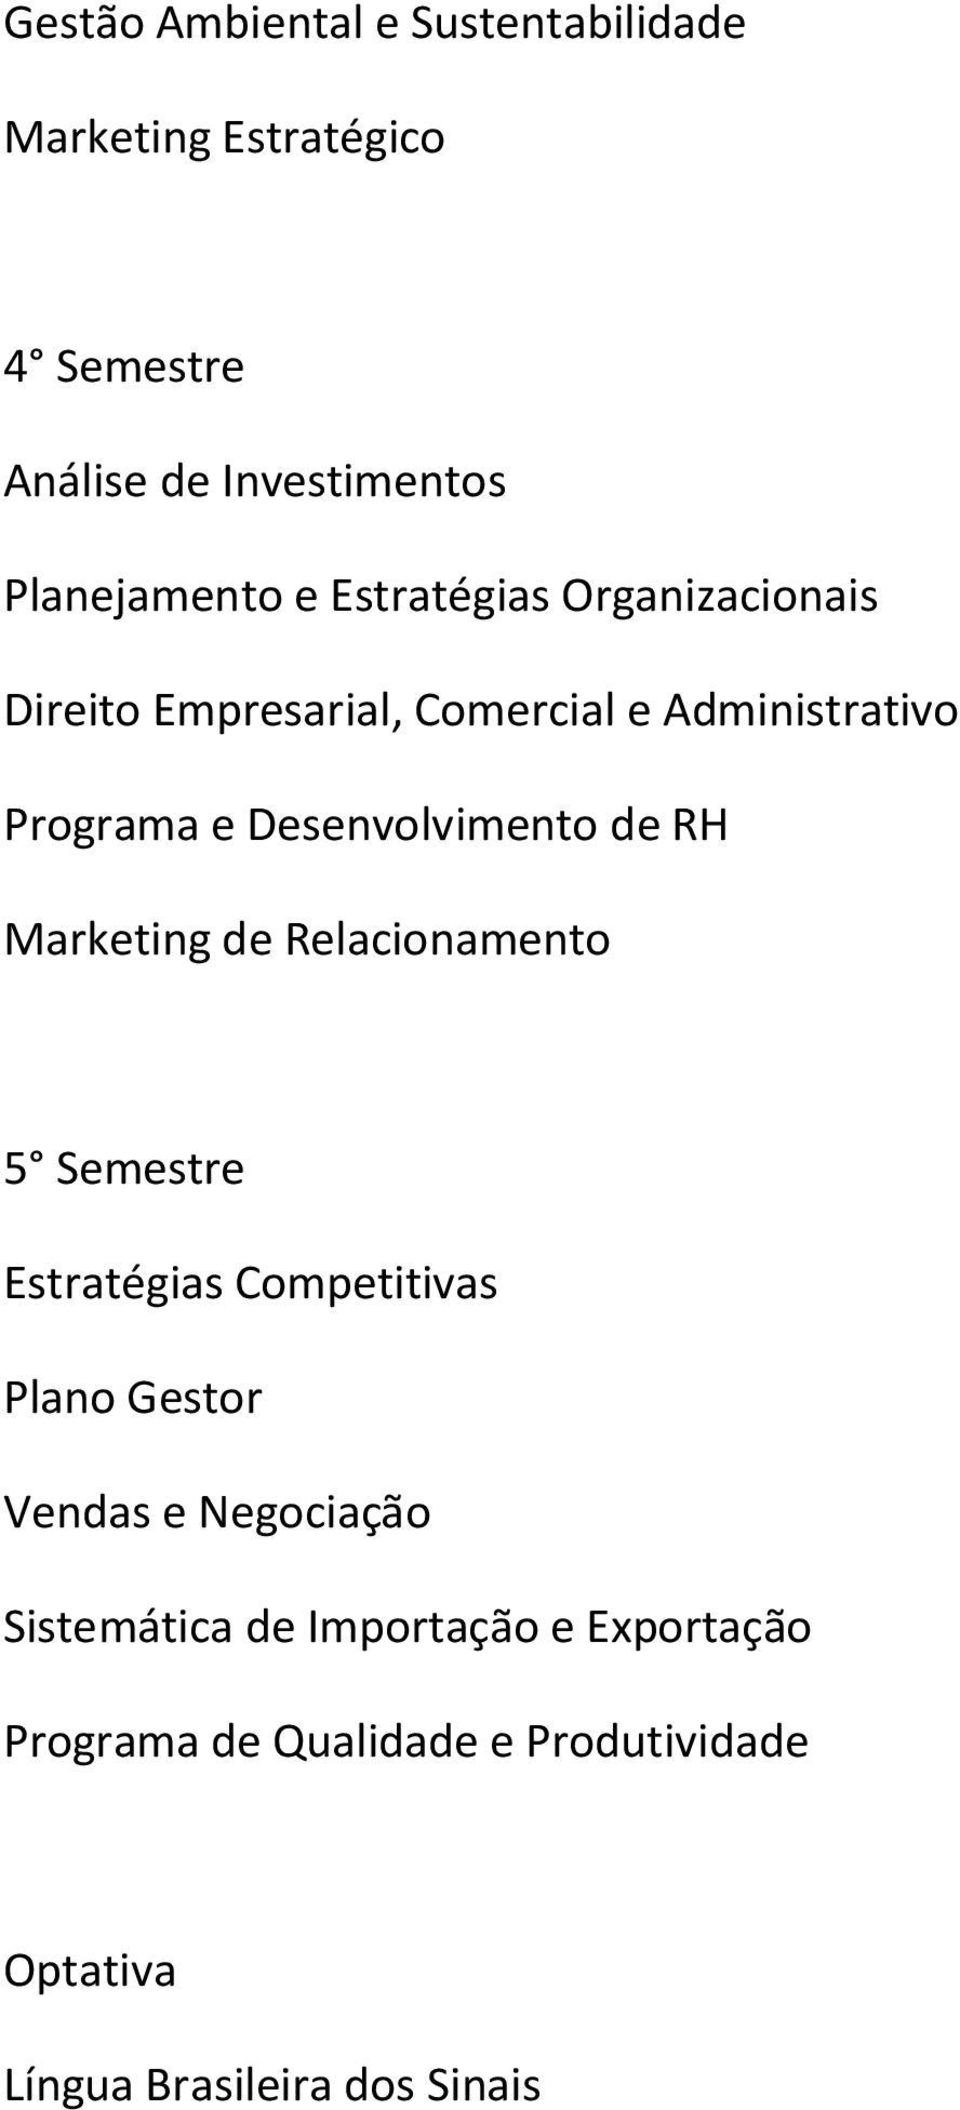 RH Marketing de Relacionamento 5 Semestre Estratégias Competitivas Plano Gestor Vendas e Negociação